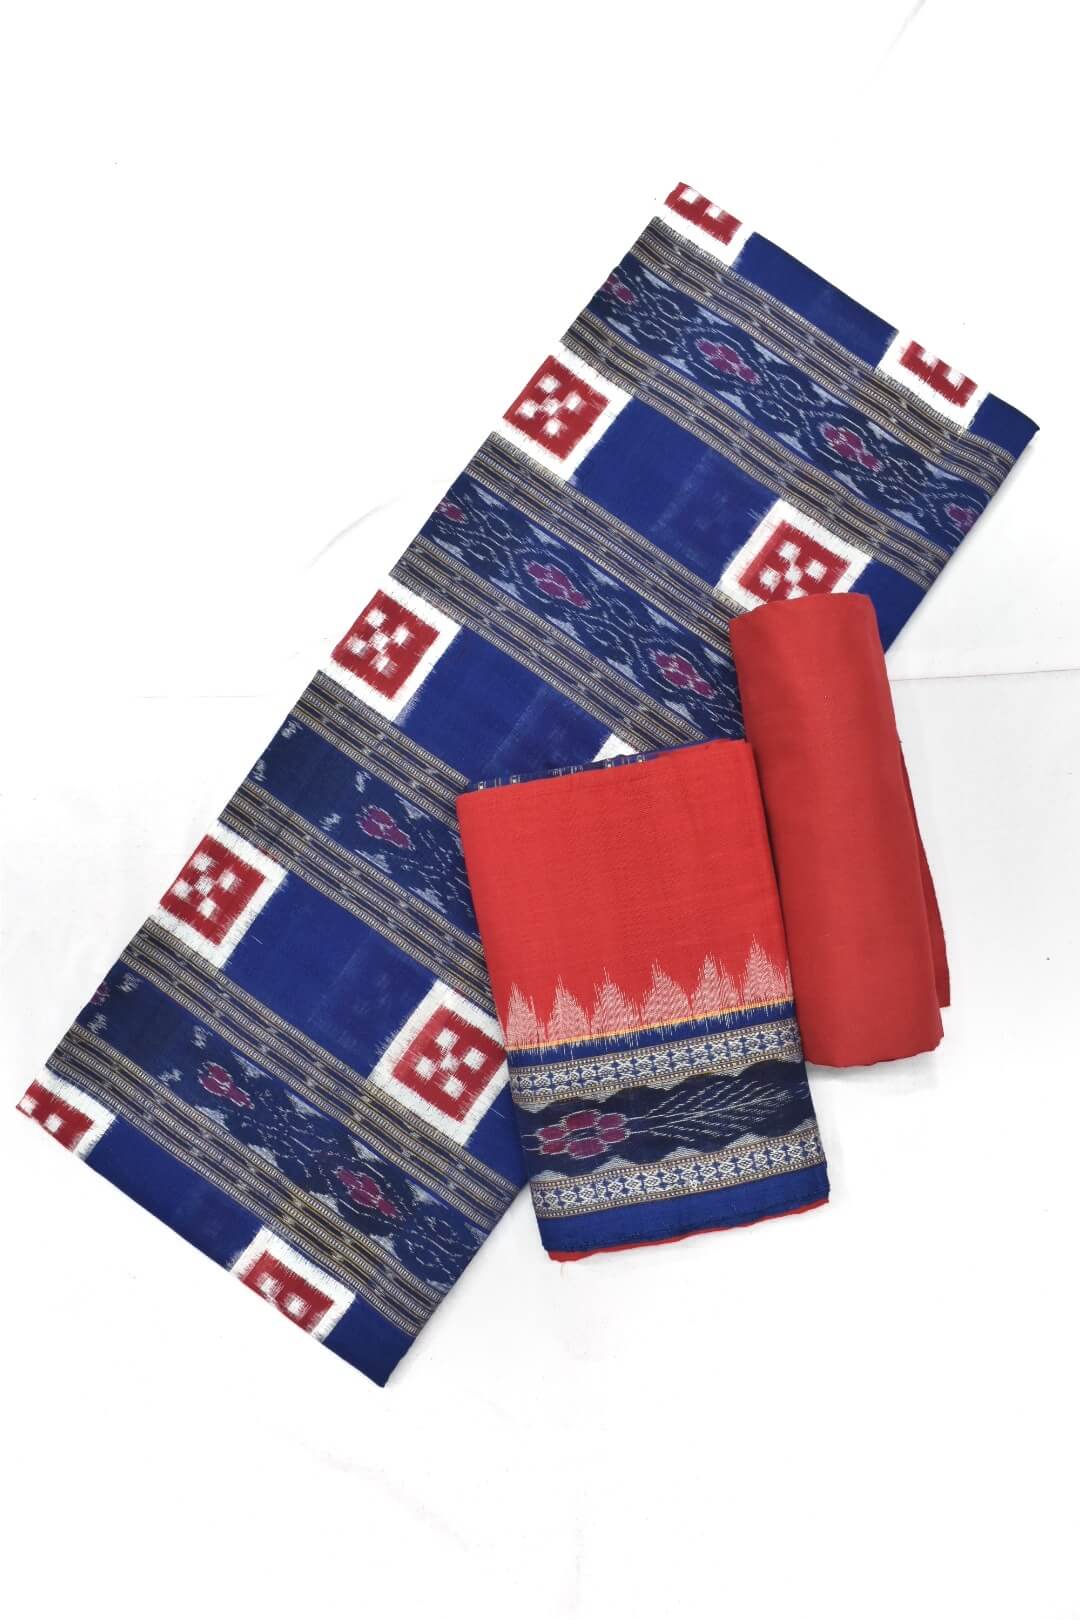 New Design Sambalpuri Handloom Cotton Dress Materials. - YouTube